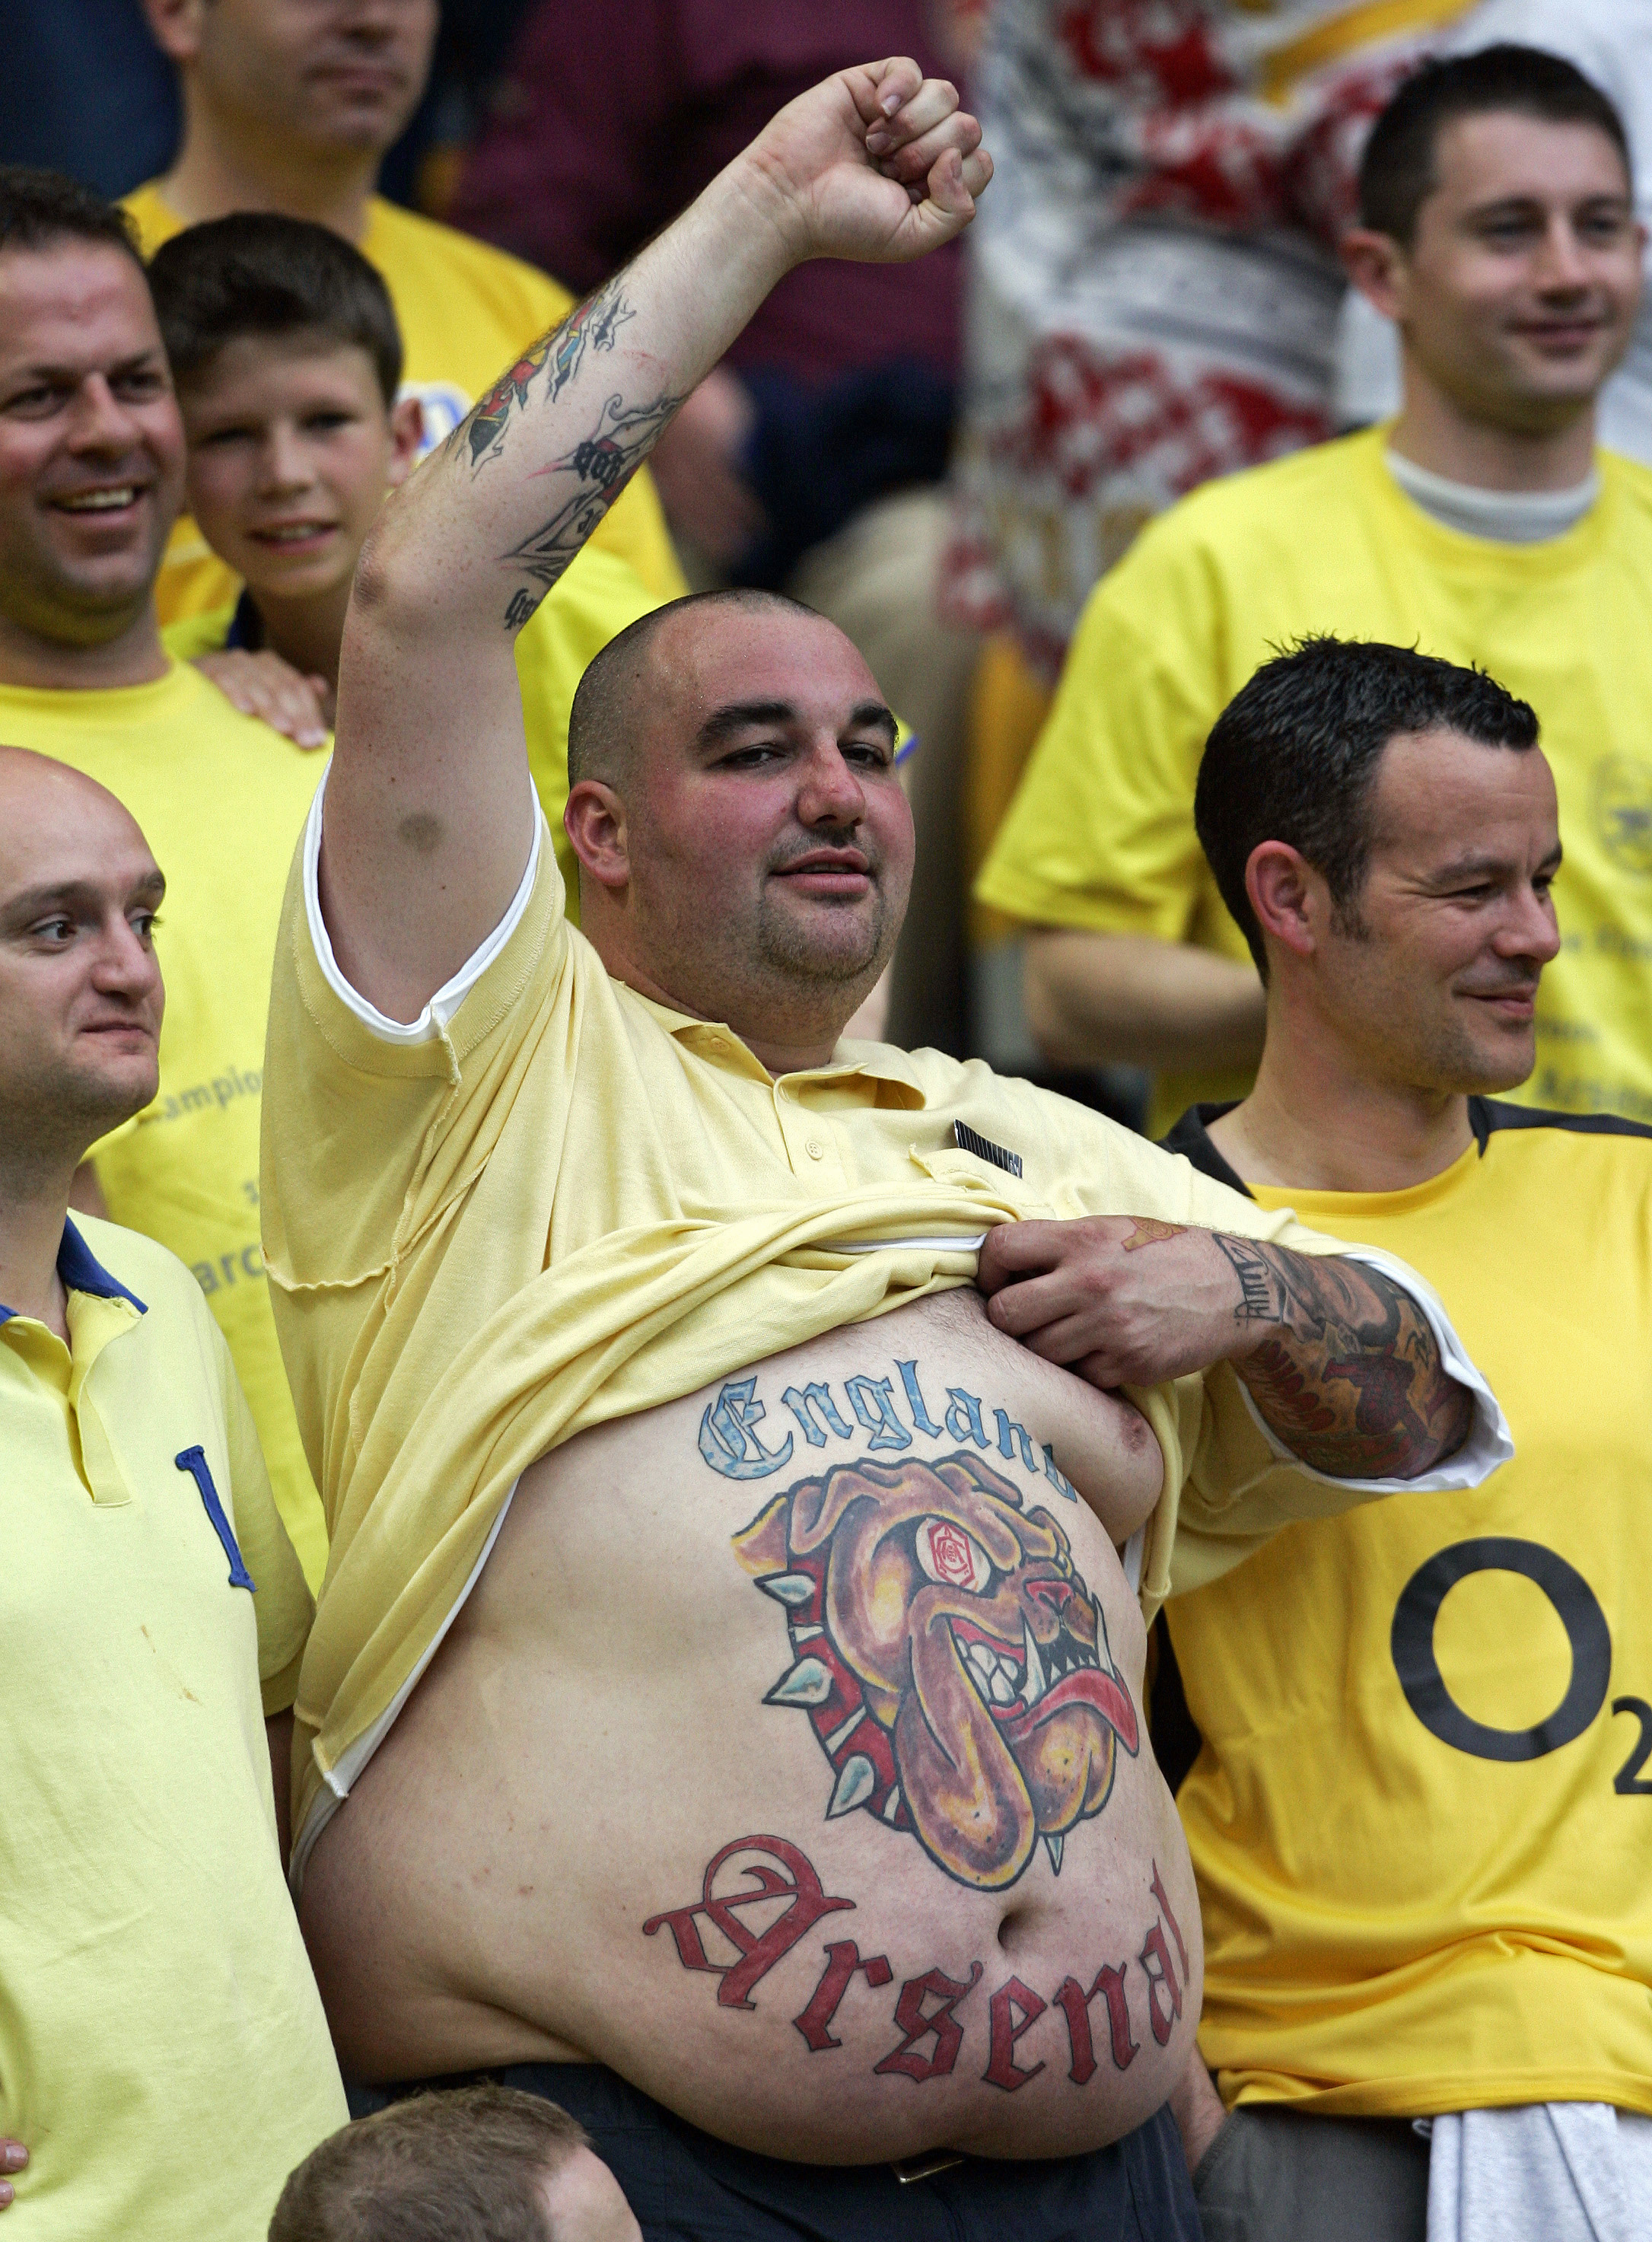 world-cup-tattoo-soccer-fan